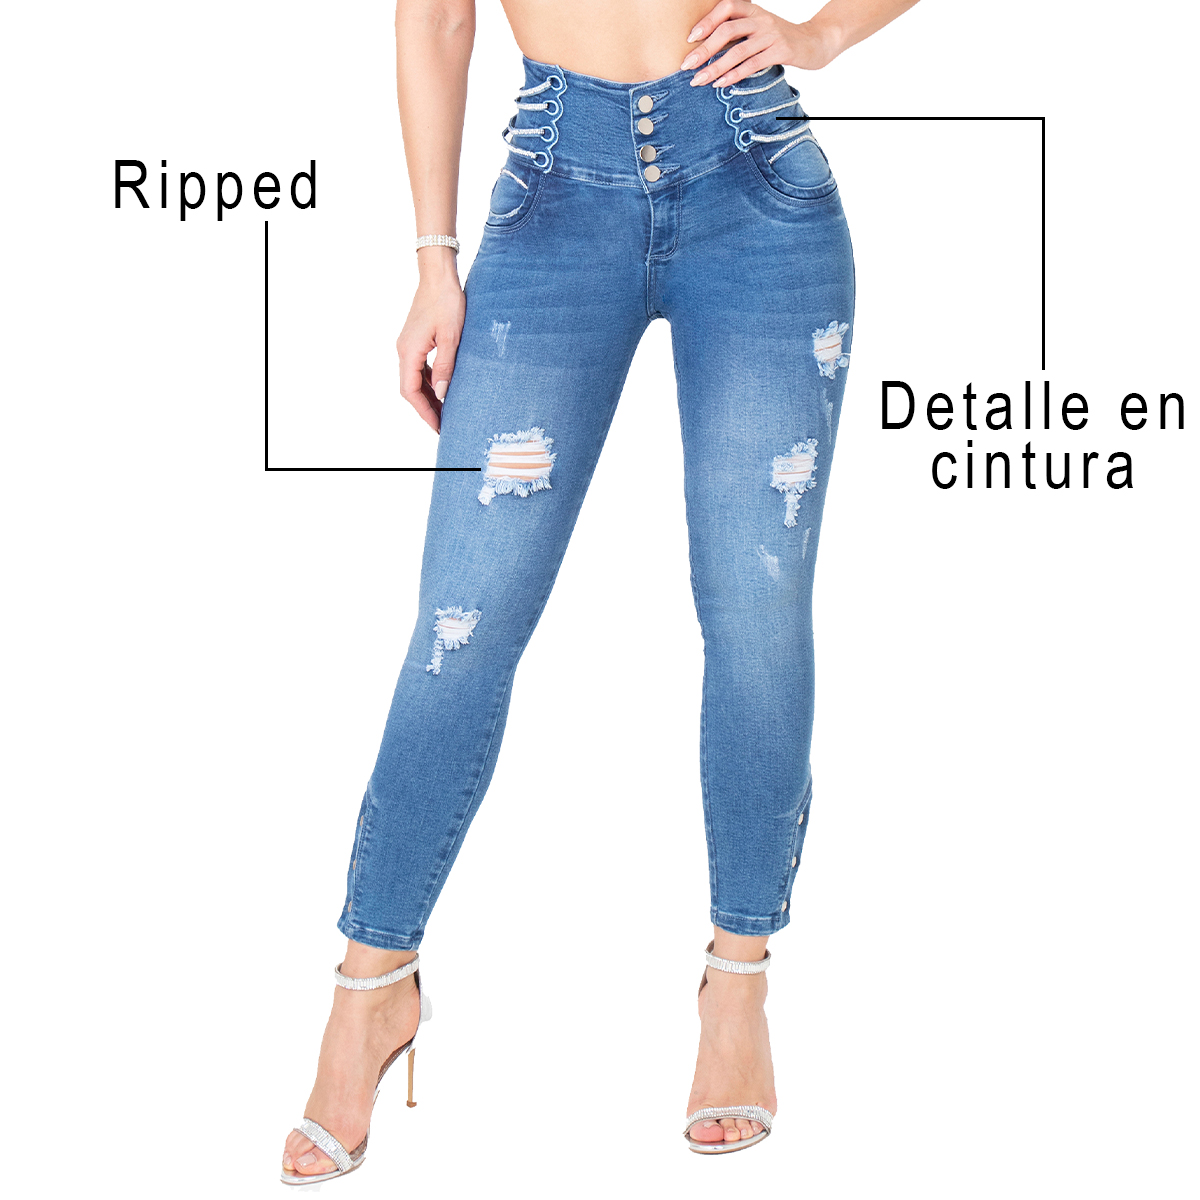 El jean colombiano con cordones es la prenda perfecta que te hará sentir segura y con un toque único. Tiene un diseño especial que realza tus curvas.